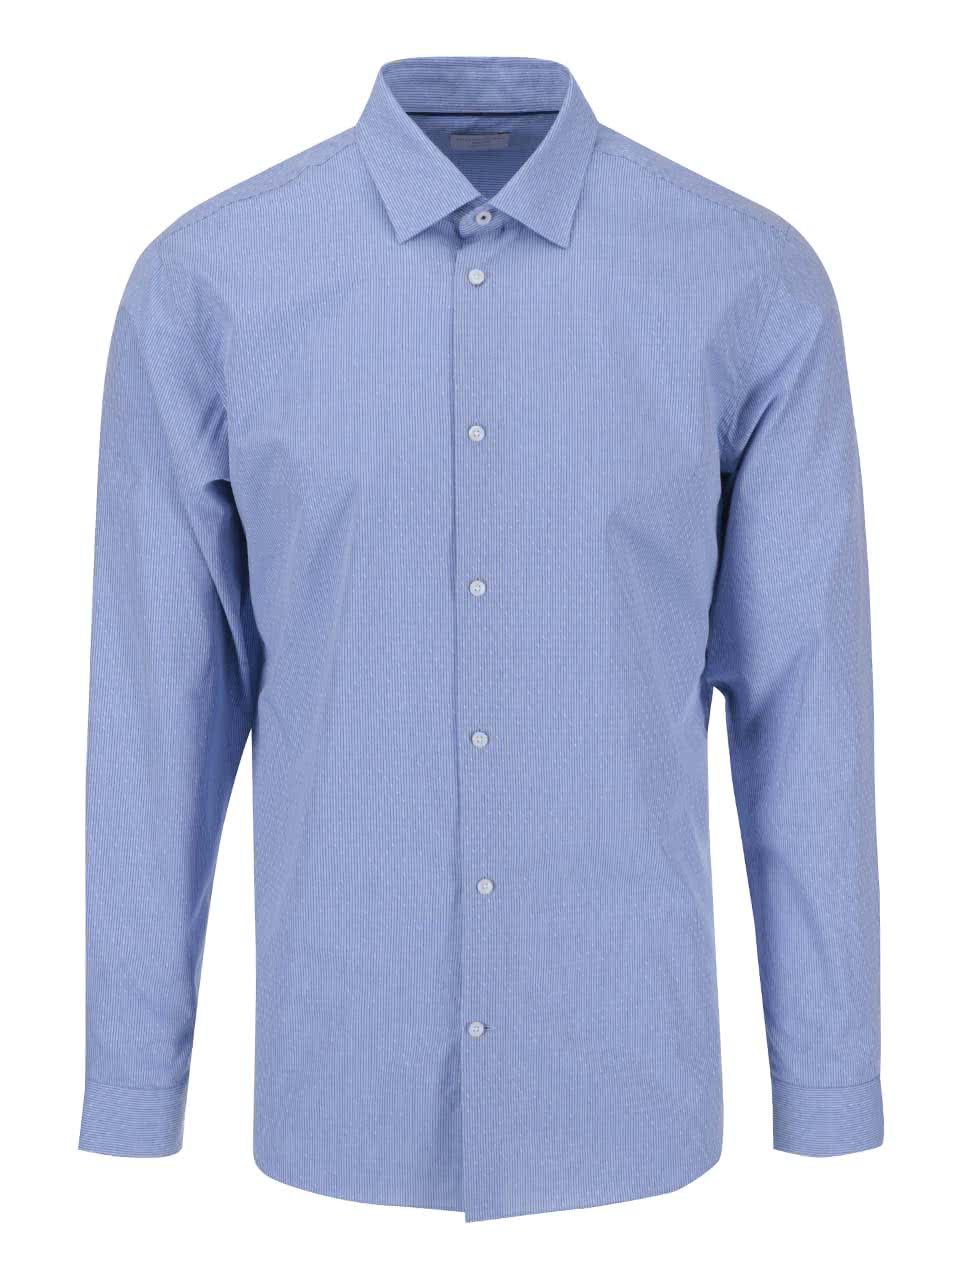 Modrá vzorovaná formální košile s kapesníčkem Selected Homme Jim